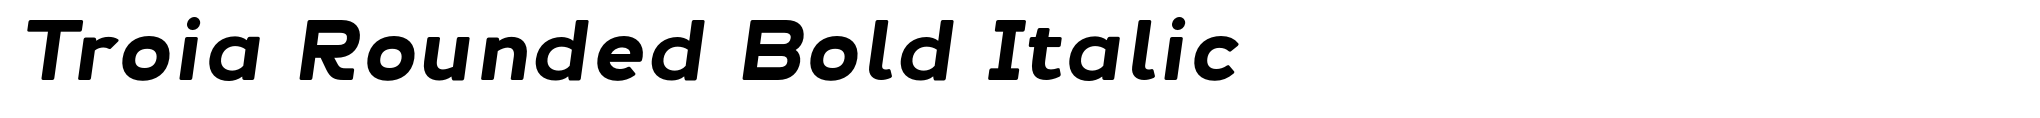 Troia Rounded Bold Italic image